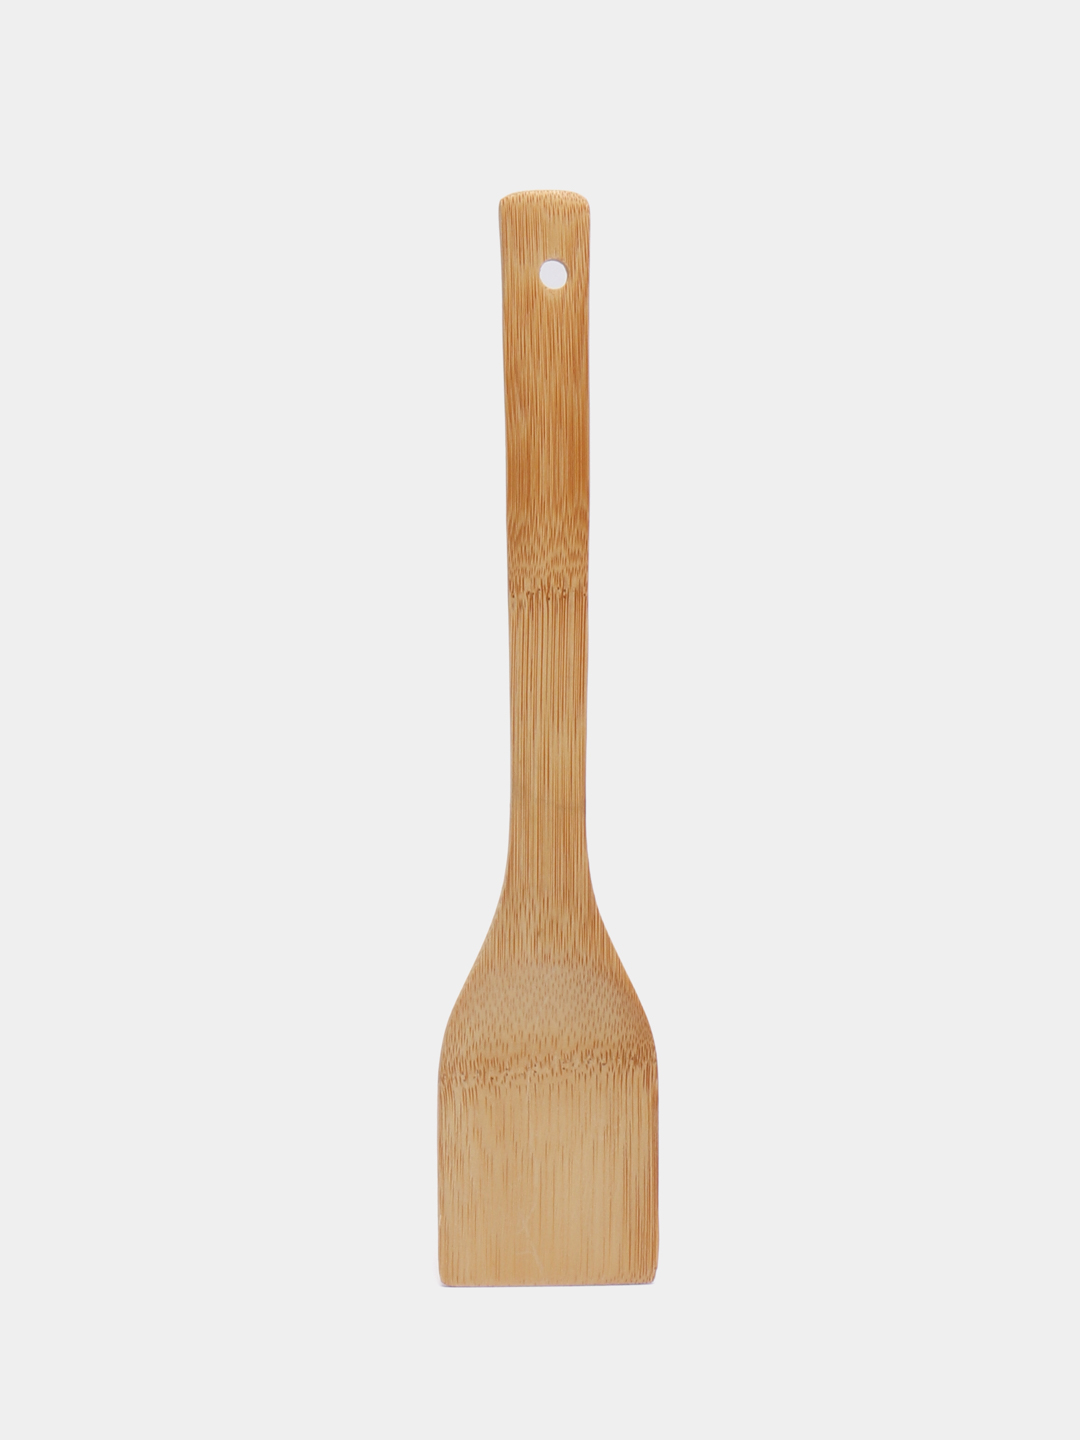 Кулинарная лопатка из бамбука, для приготовления пищи за 71.5 ₽  .